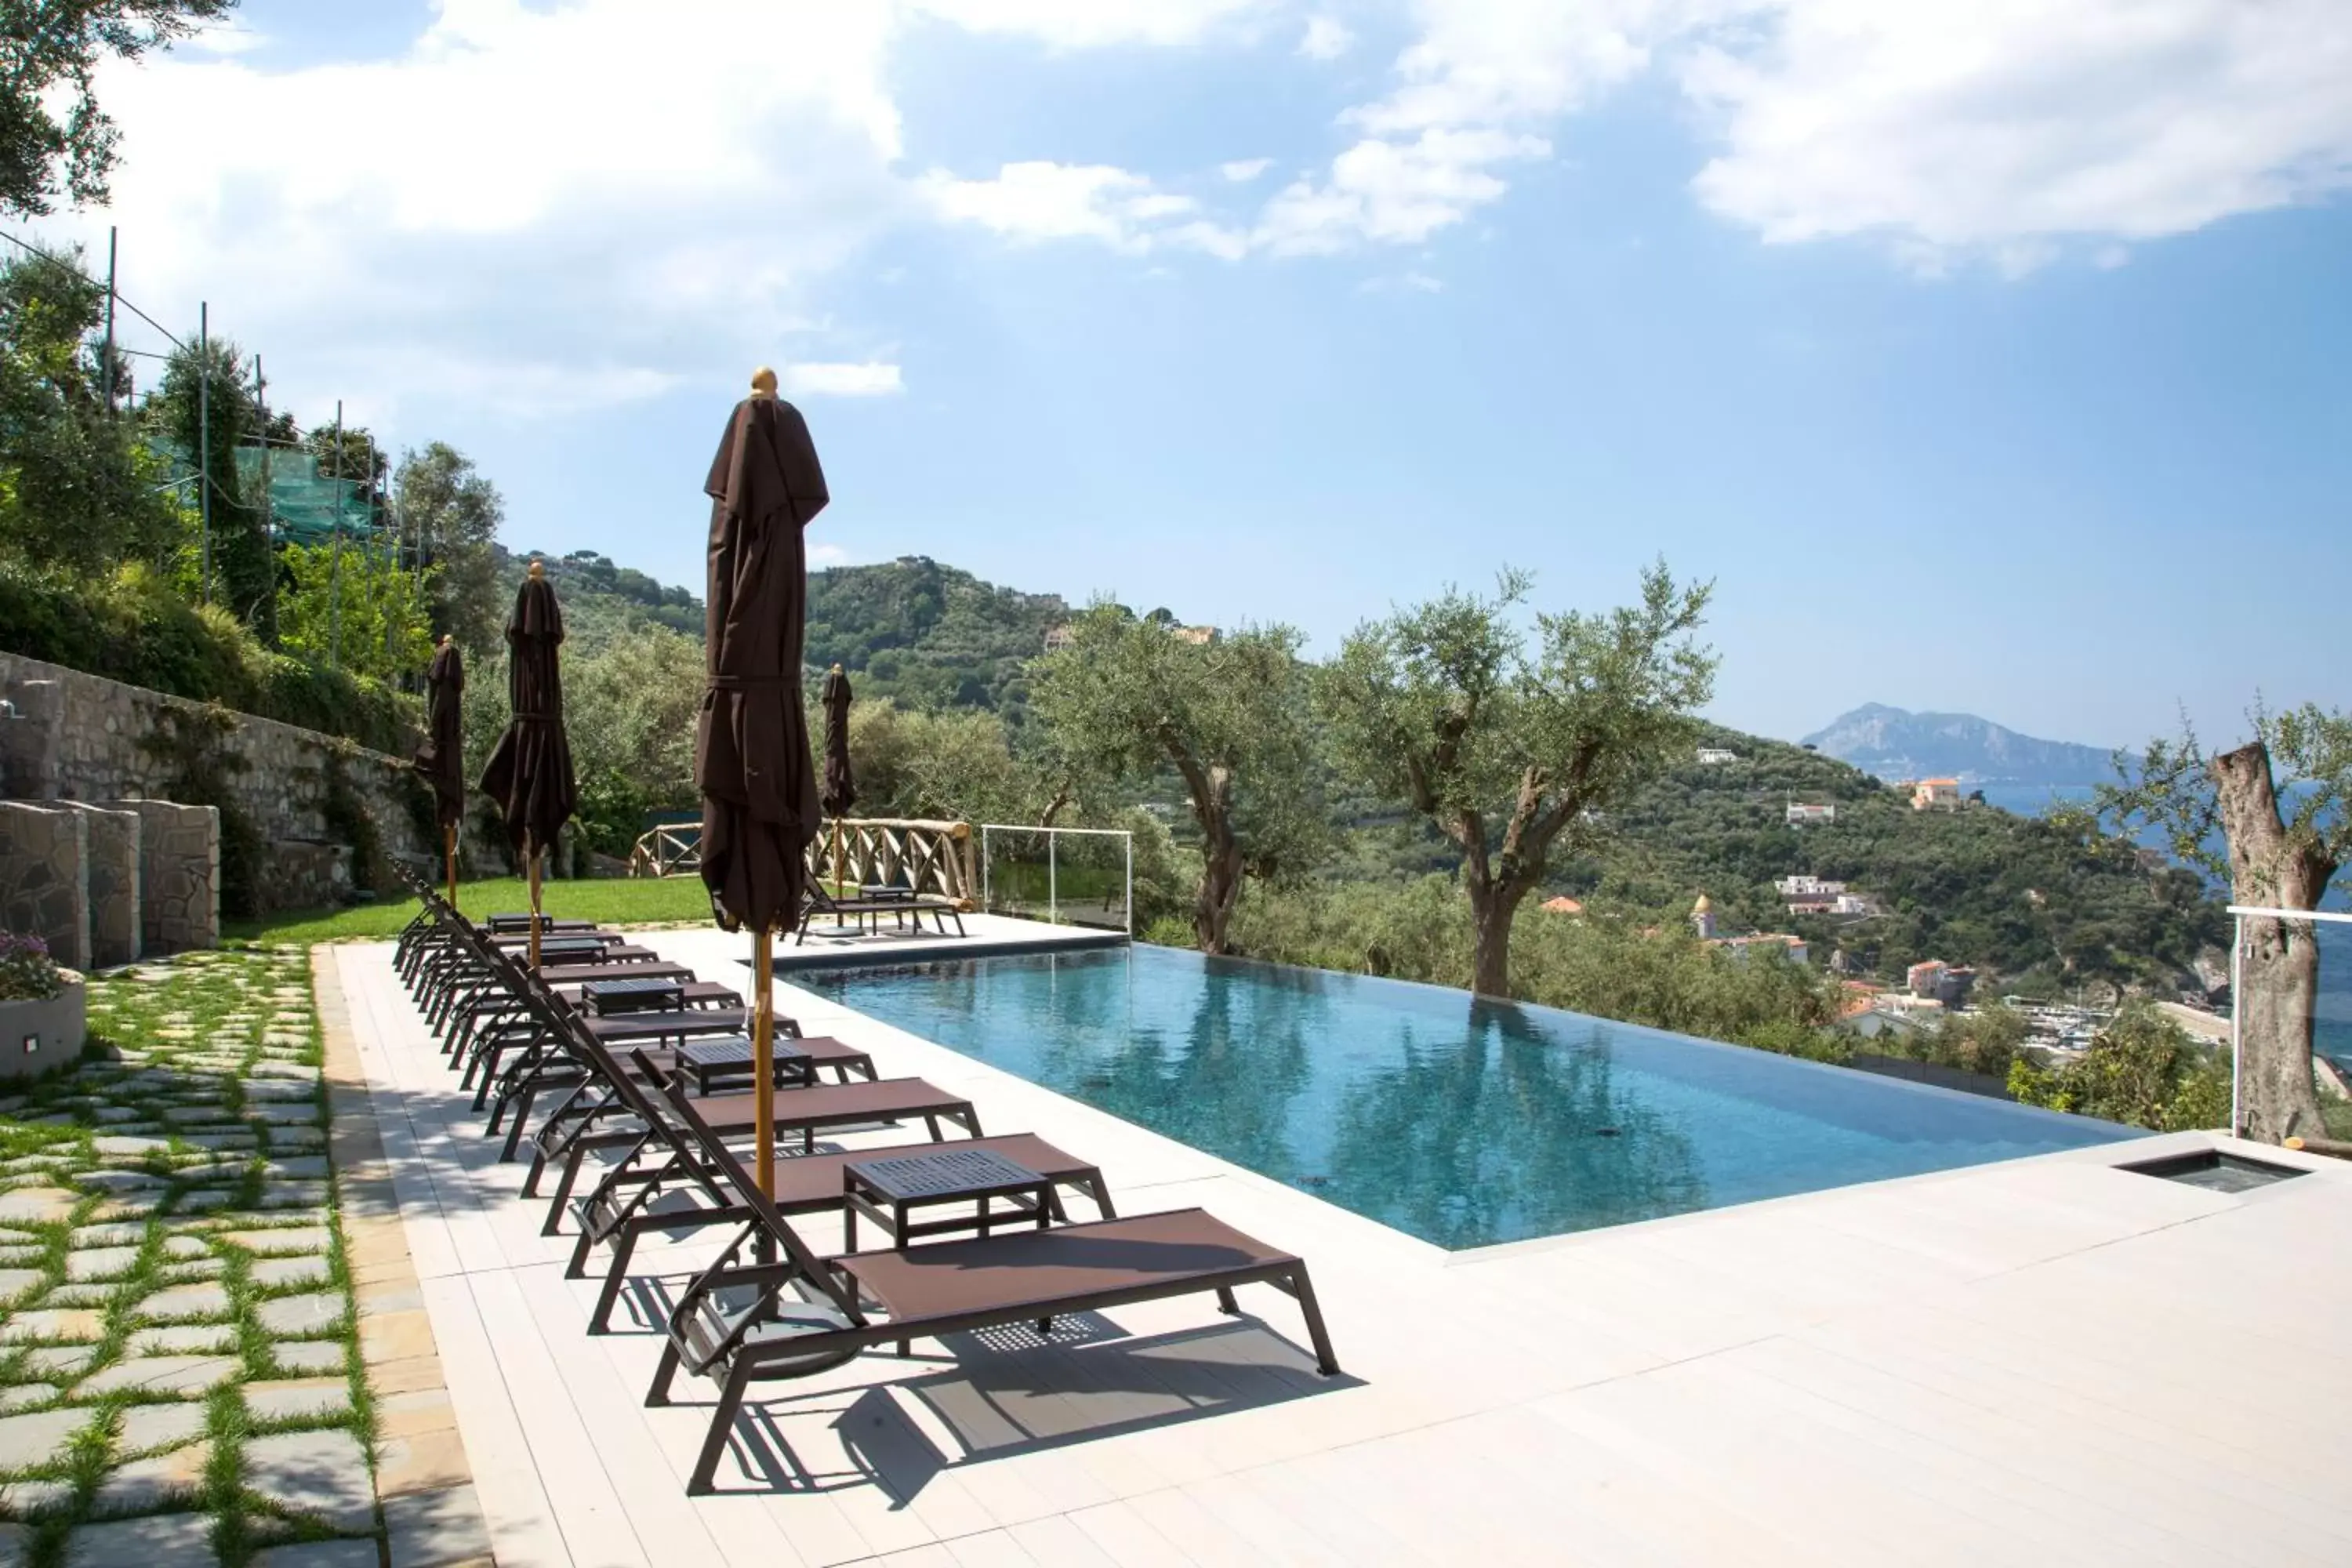 Day, Swimming Pool in Villa Fiorella Art Hotel